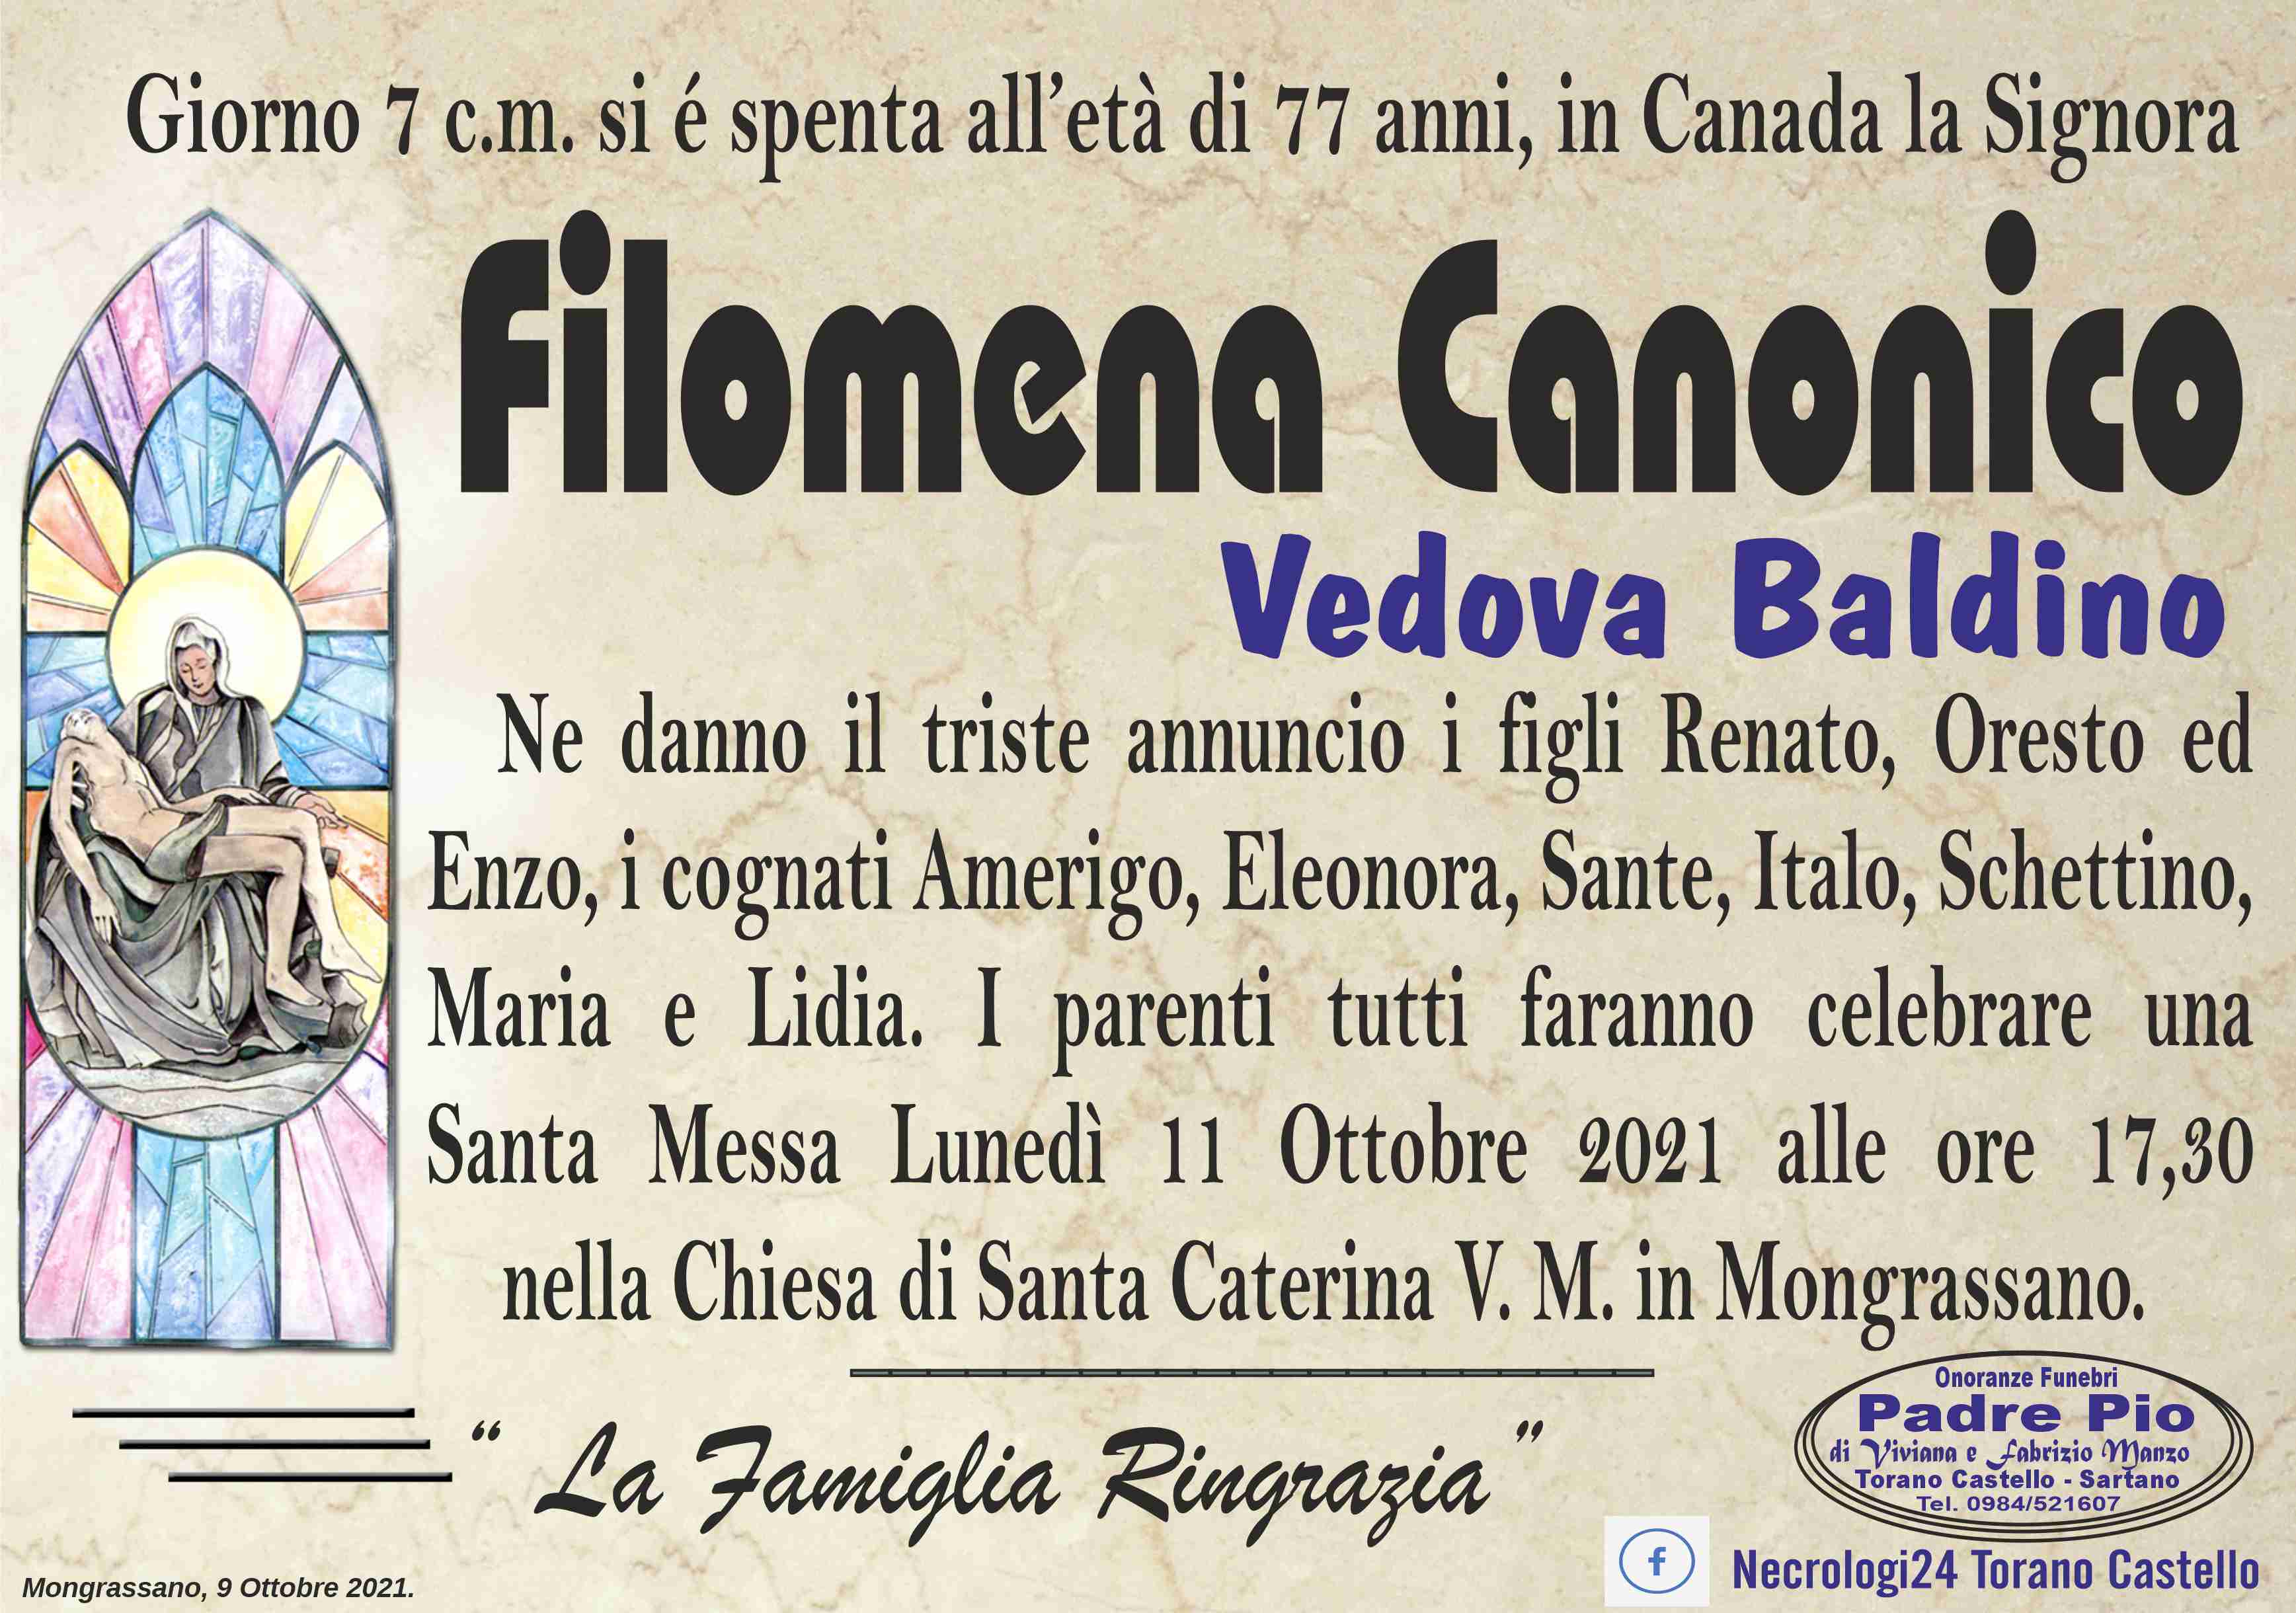 Filomena Canonico